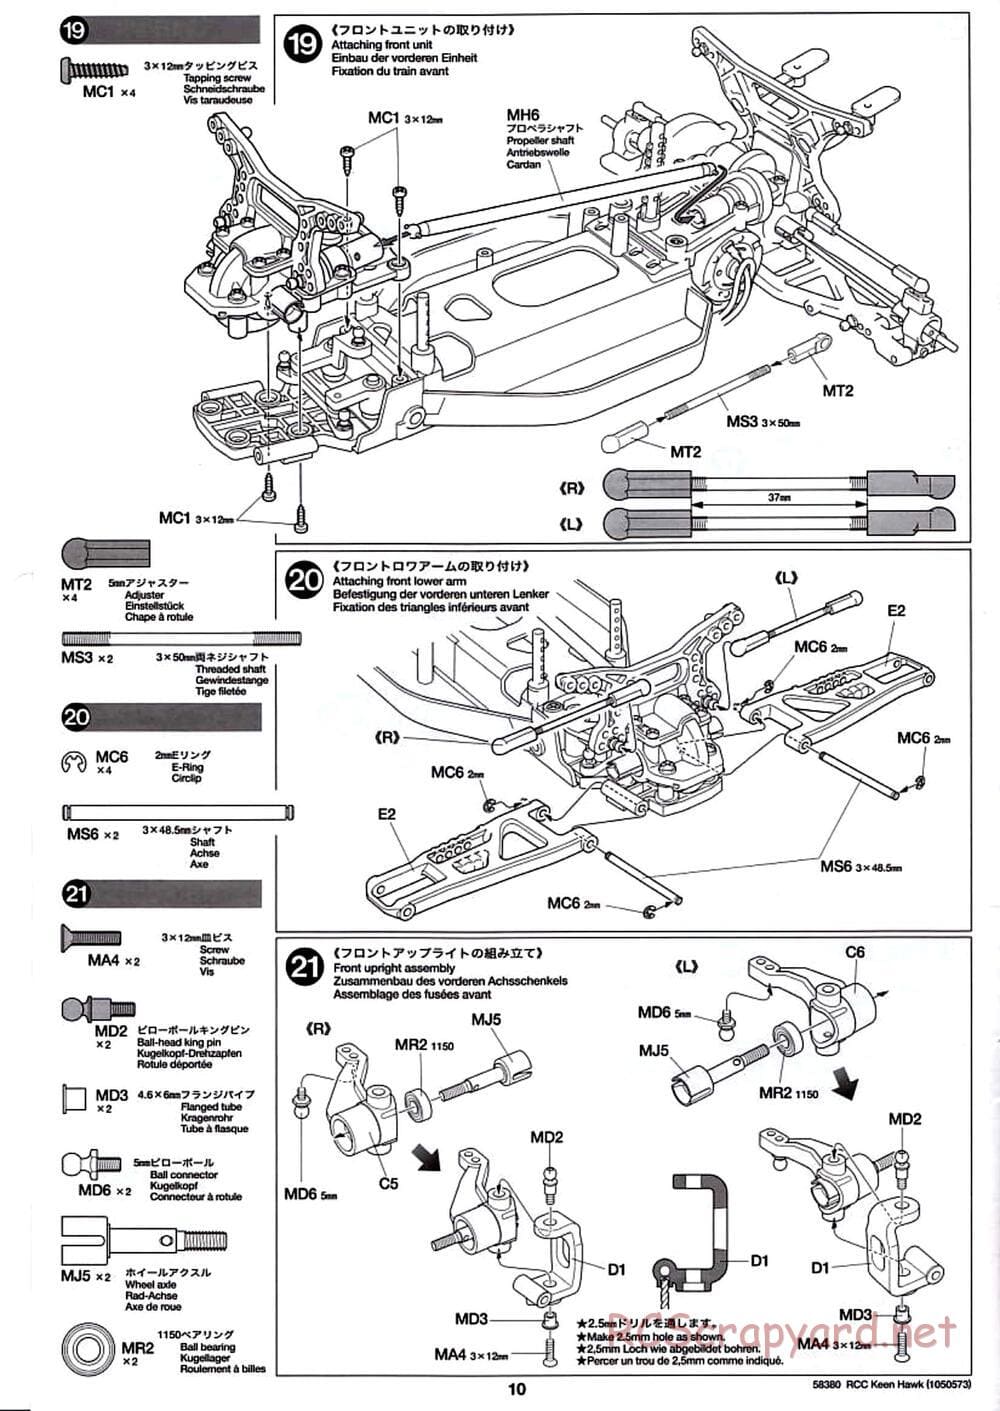 Tamiya - Keen Hawk Chassis - Manual - Page 10